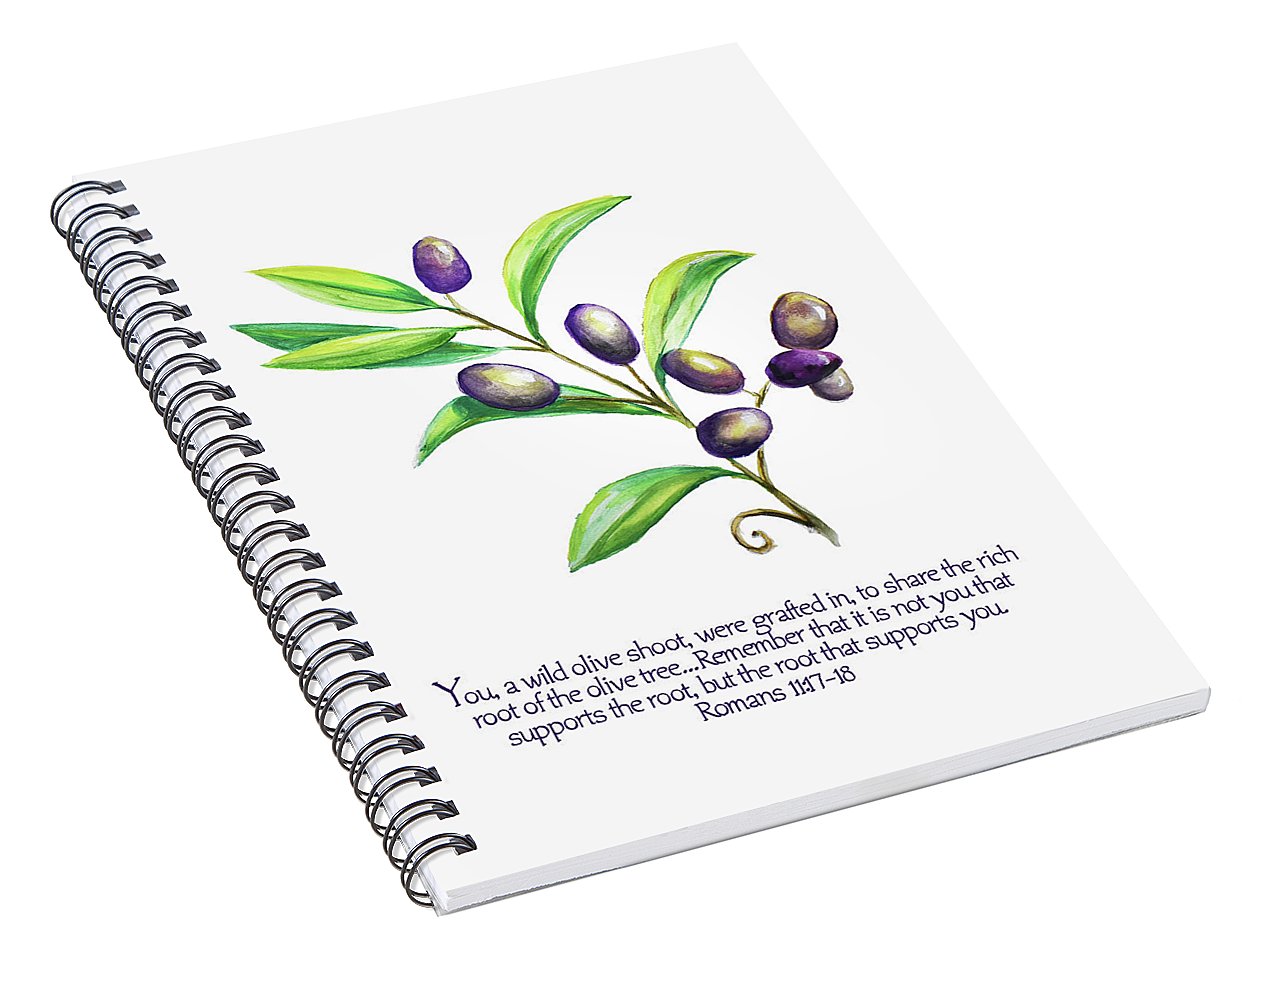 'Wild Olive Shoot' - Spiral Notebook